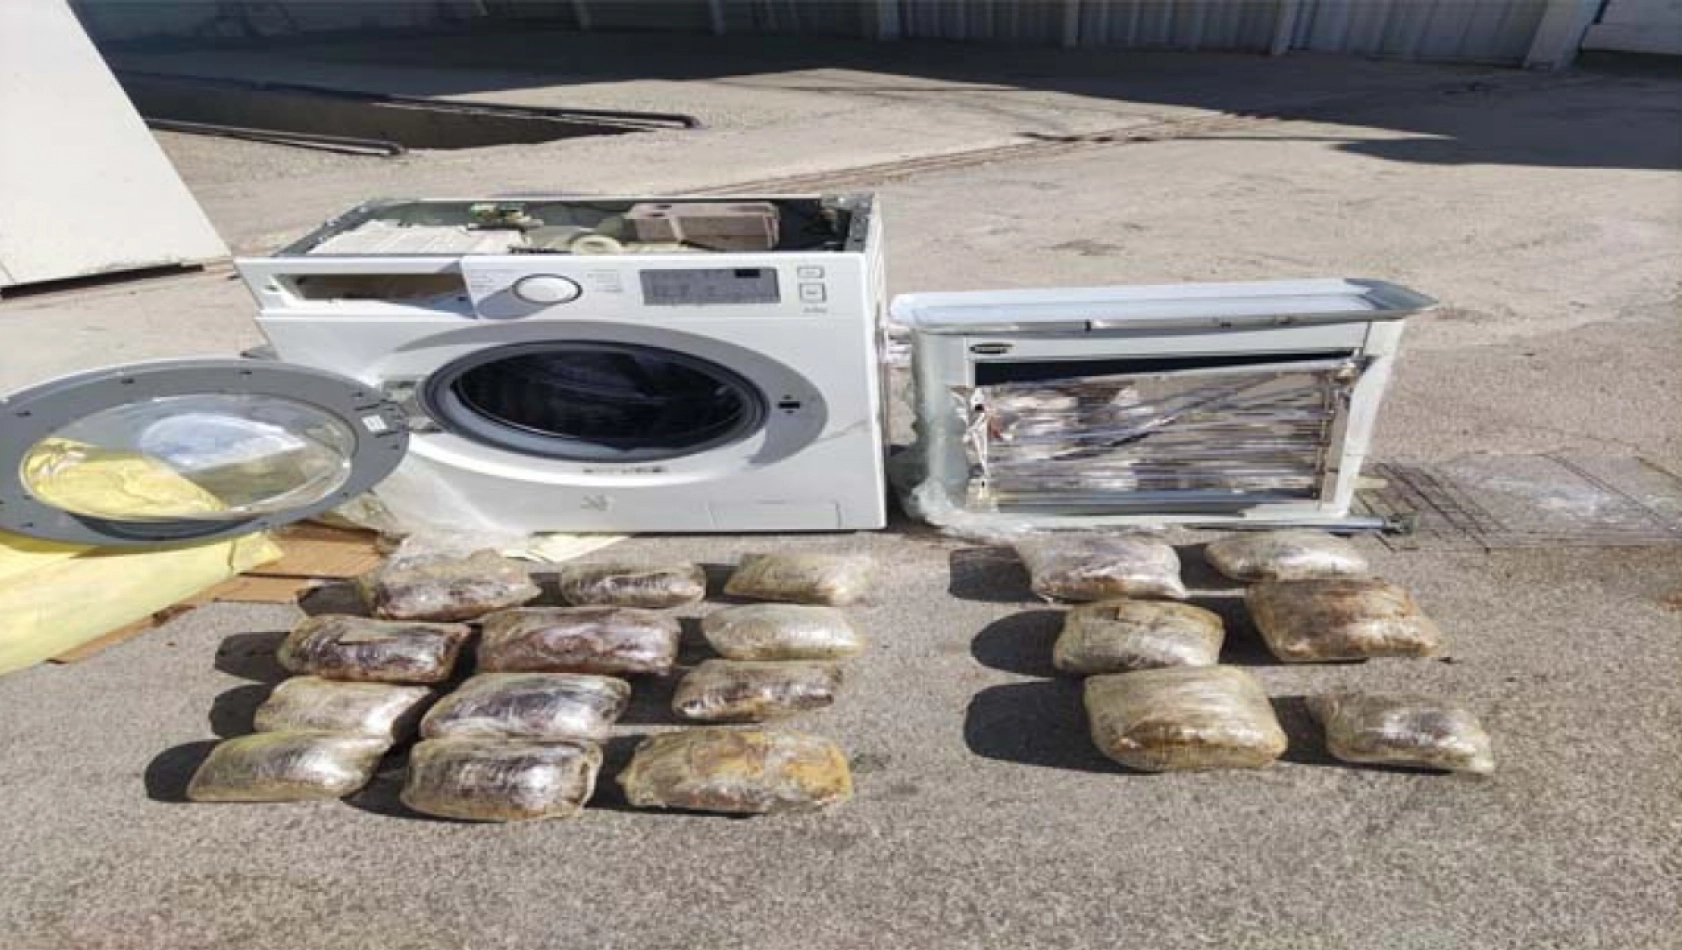 Çamaşır makinesinde gizlenen uyuşturucular Konya polisinin gözünden kaçmadı